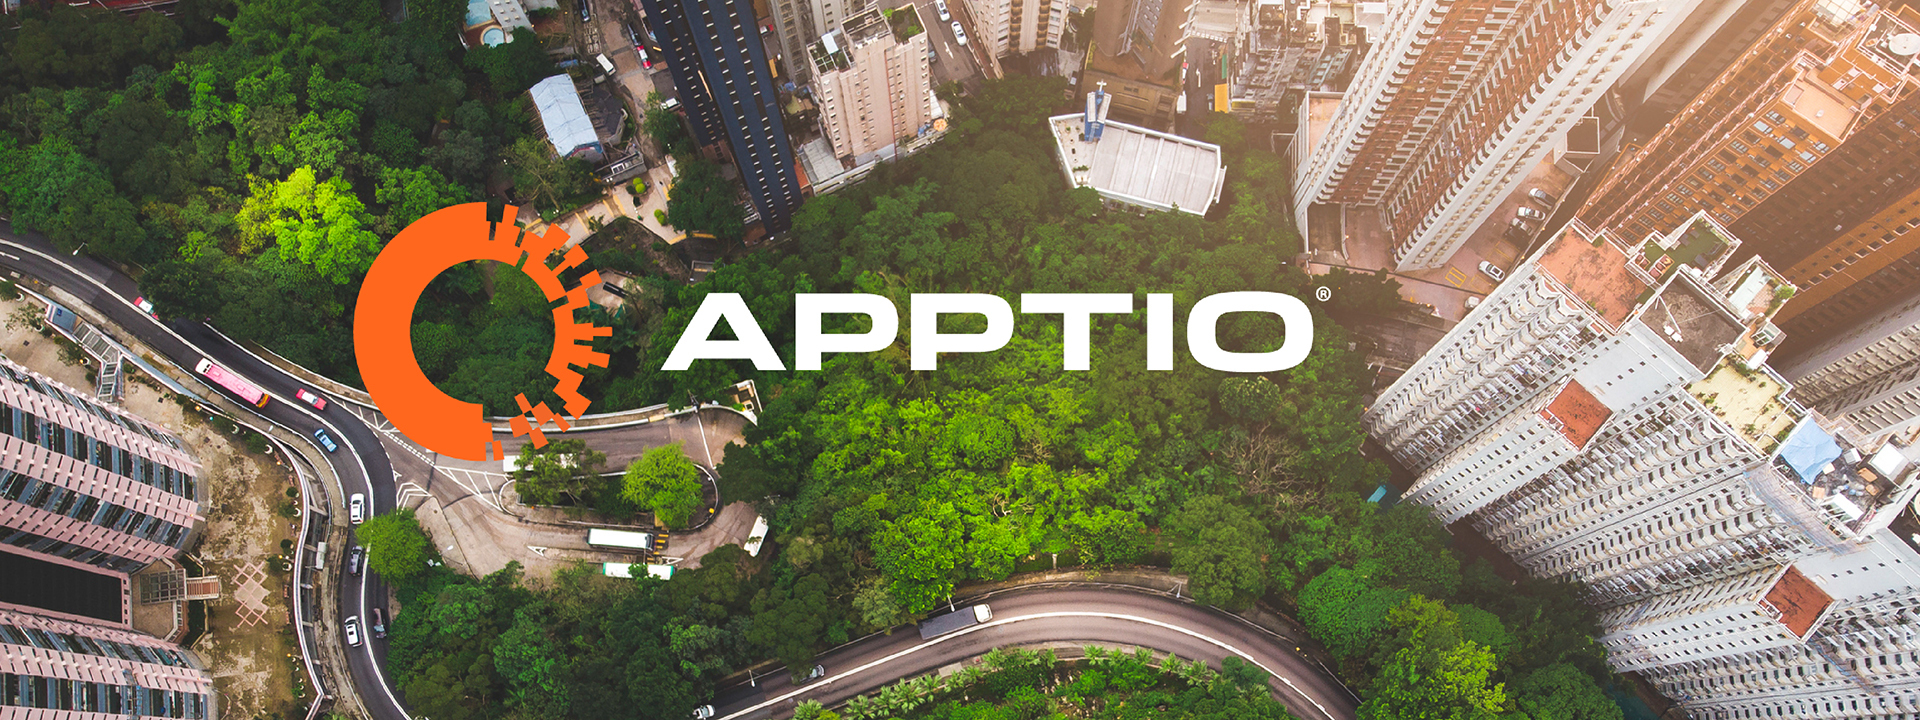 IBM to Acquire Apptio